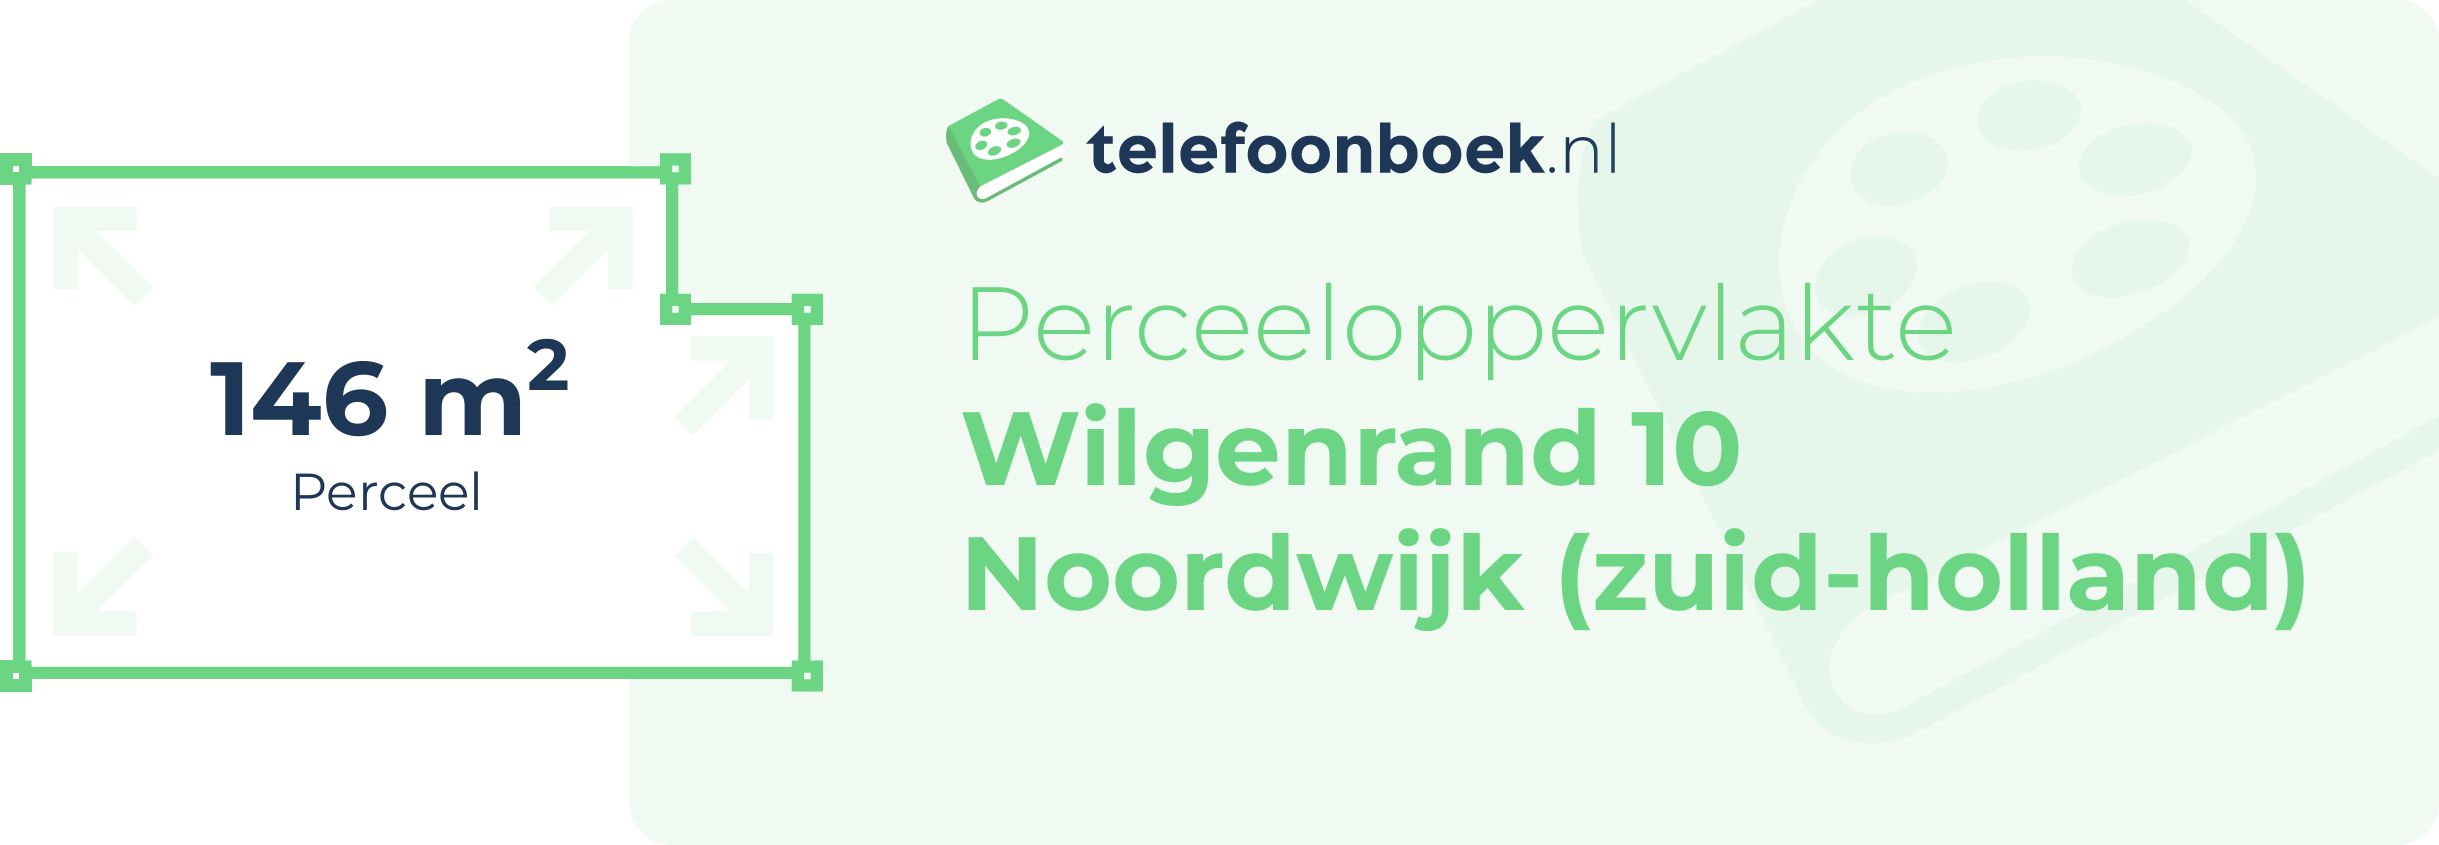 Perceeloppervlakte Wilgenrand 10 Noordwijk (Zuid-Holland)